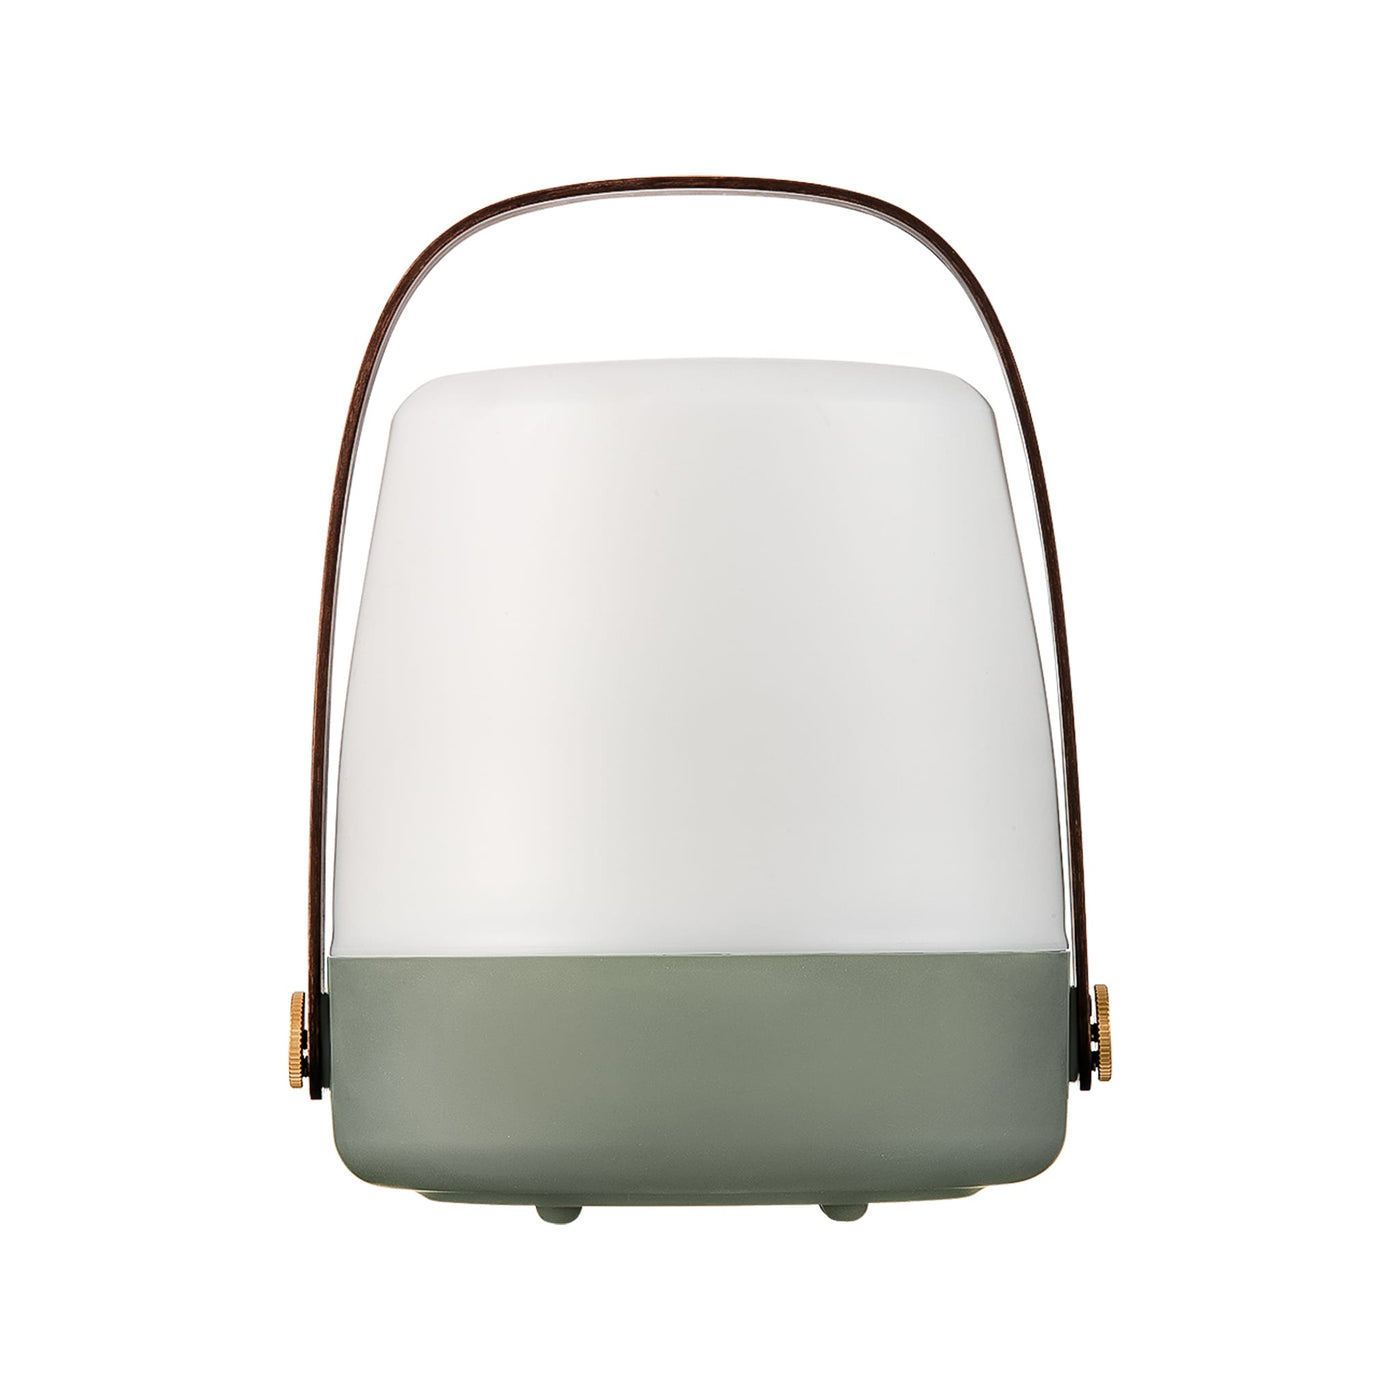 La lampe de table Lite-up de kooduu : votre compagnon idéal pour une ambiance parfaite, à l'intérieur comme à l'extérieur.